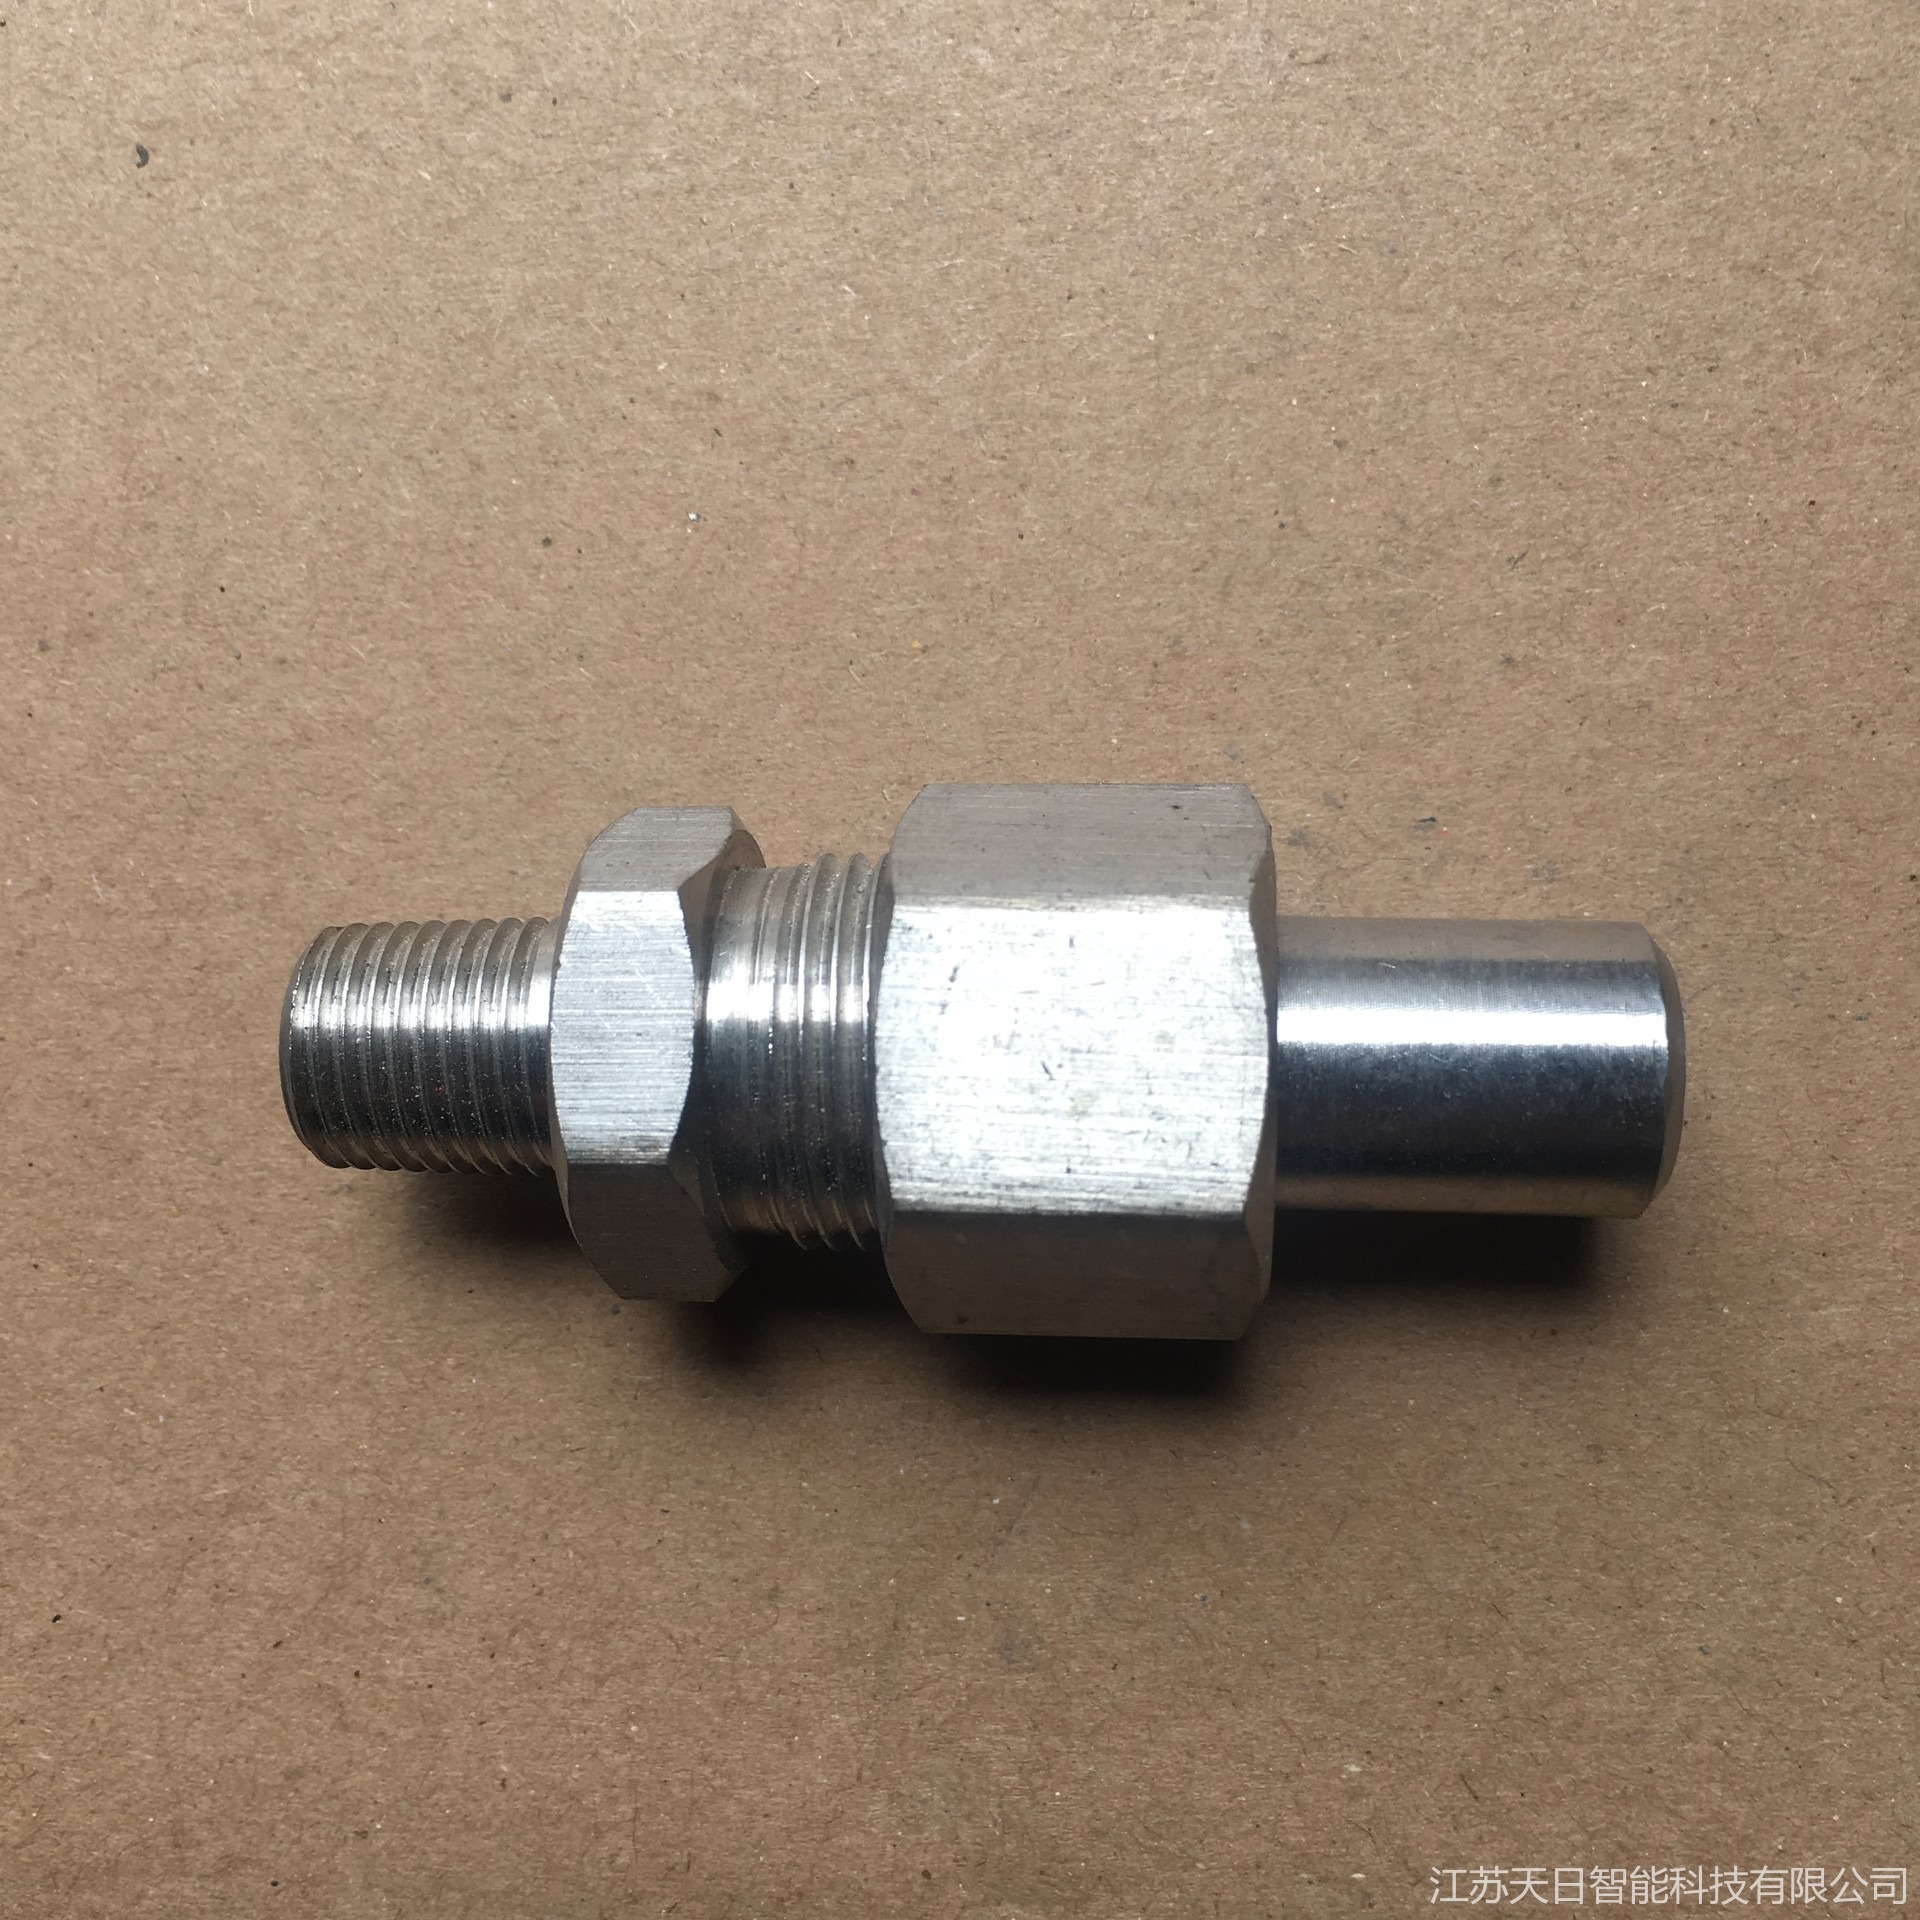 承插焊异径短节加工现货 PN63 22-/SWФ18  承插焊异径短节